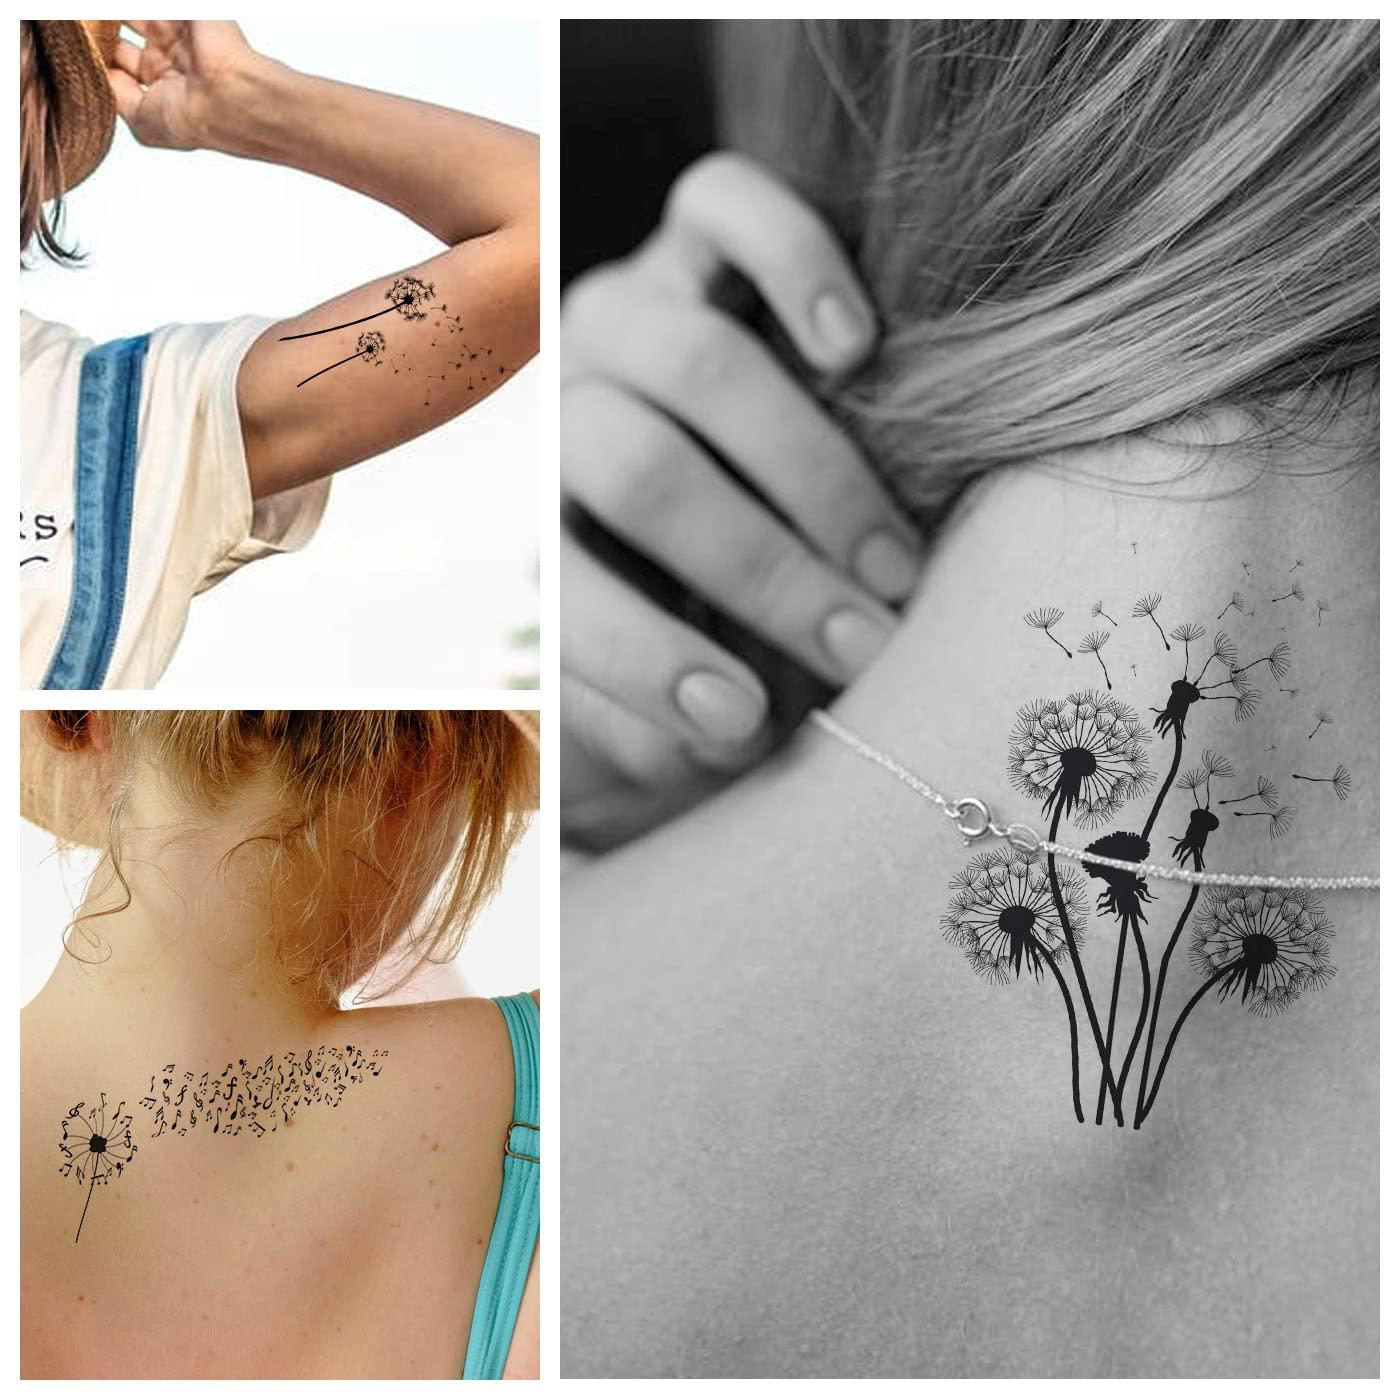 Pin by Emma Chapman on Tattoo | Memorial tattoos, Brother tattoos, Tattoos